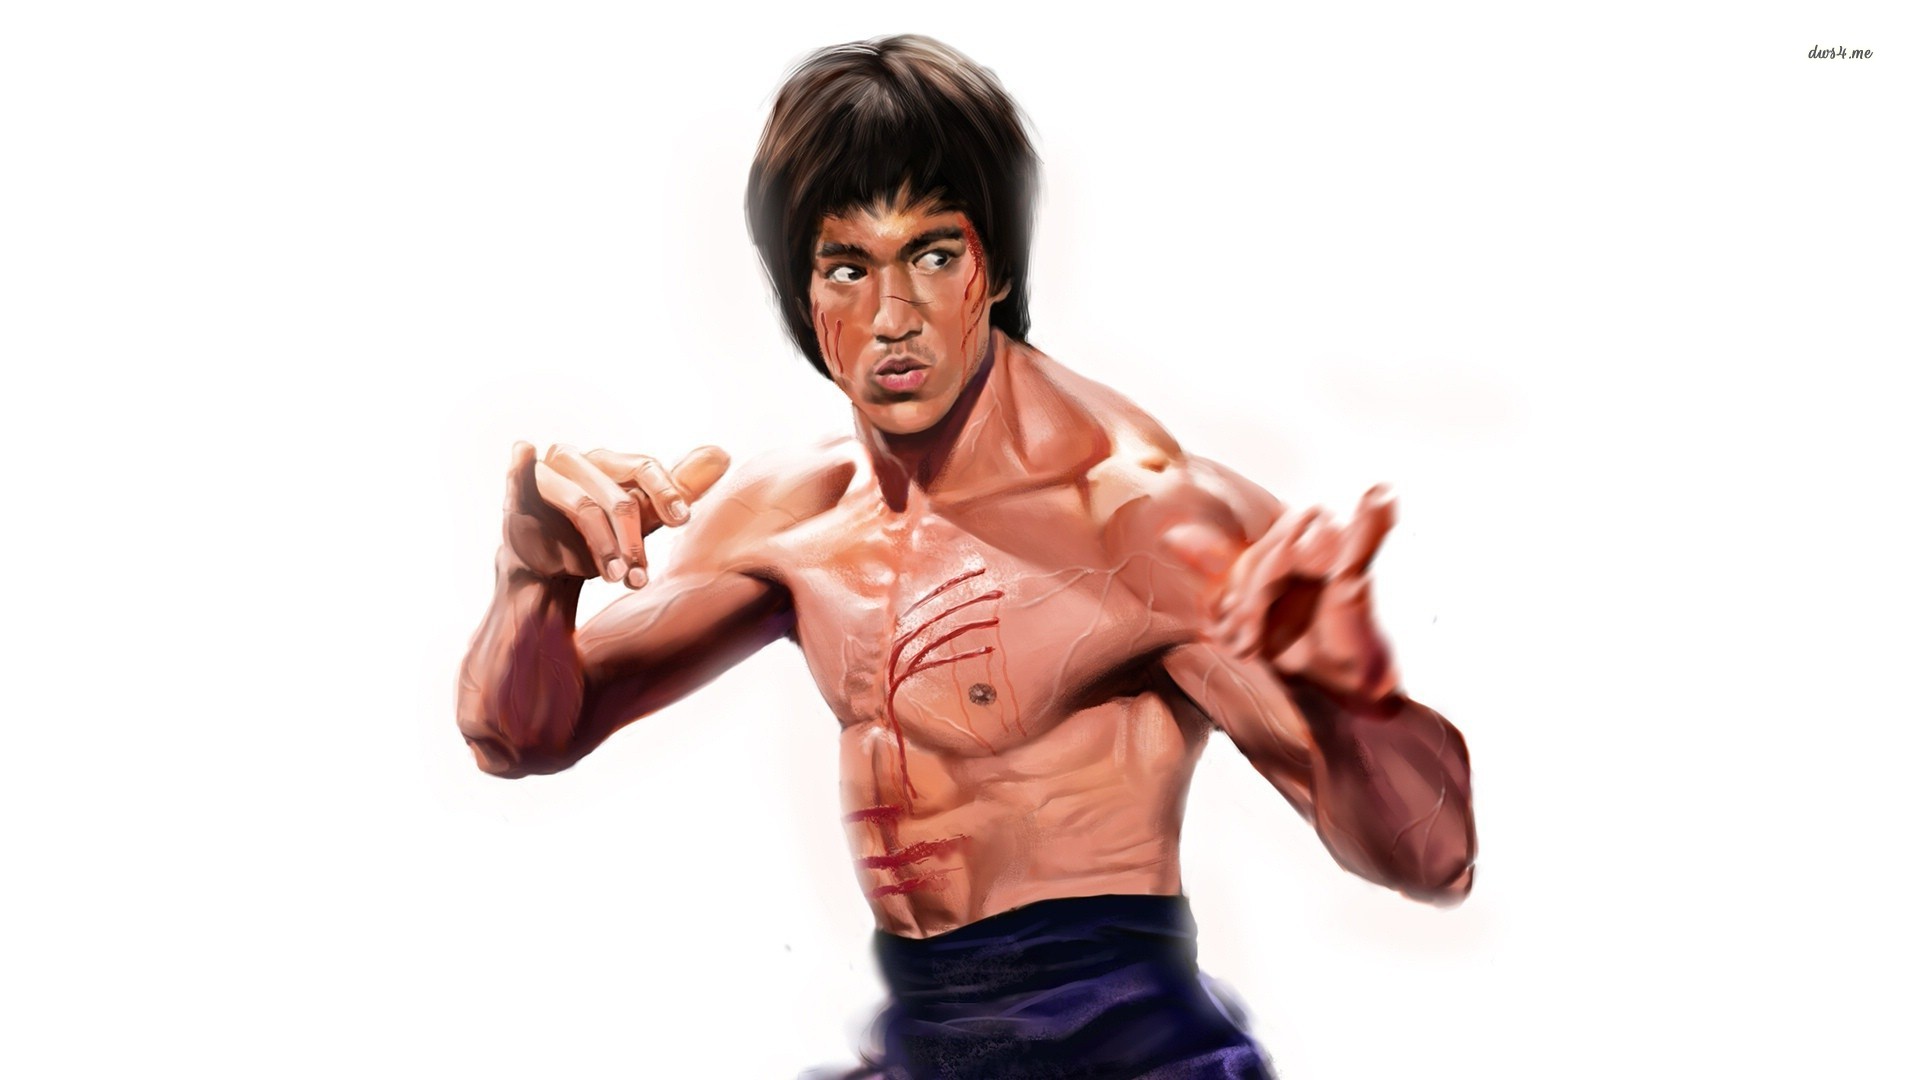 Bruce Lee Wallpapers HD paintings